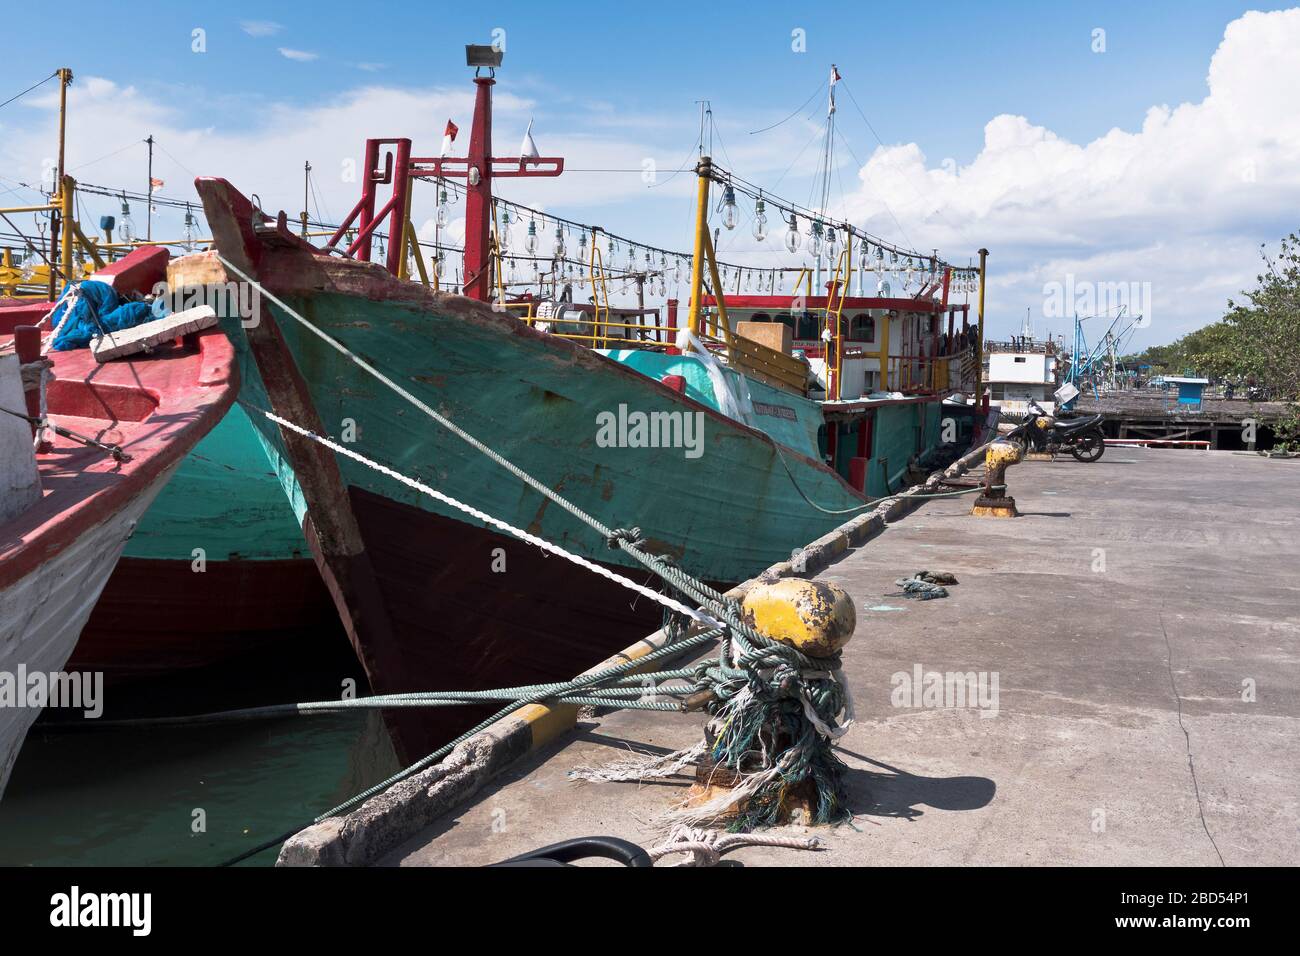 dh Hafen von Benoa Asien BALI INDONESIEN Tiefsee Thunfischflotte Fischerboote im Hafen Liegeplatz gebunden Schiffe indonesisch Stockfoto